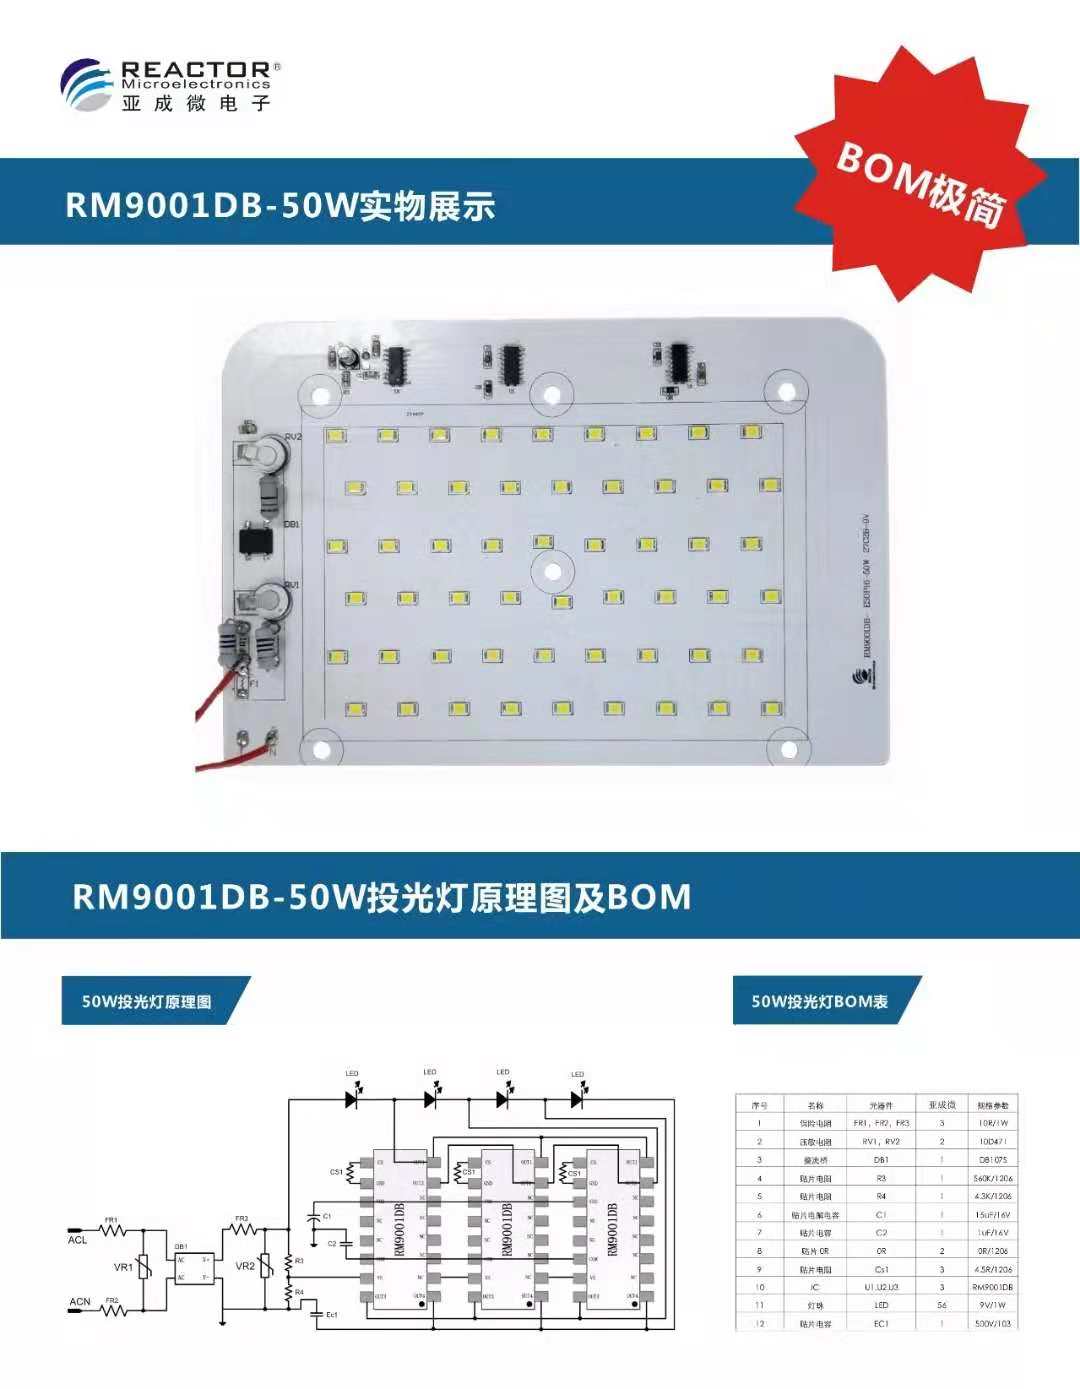 投光灯方案建议使用 RM9001DB-ESOP16方案